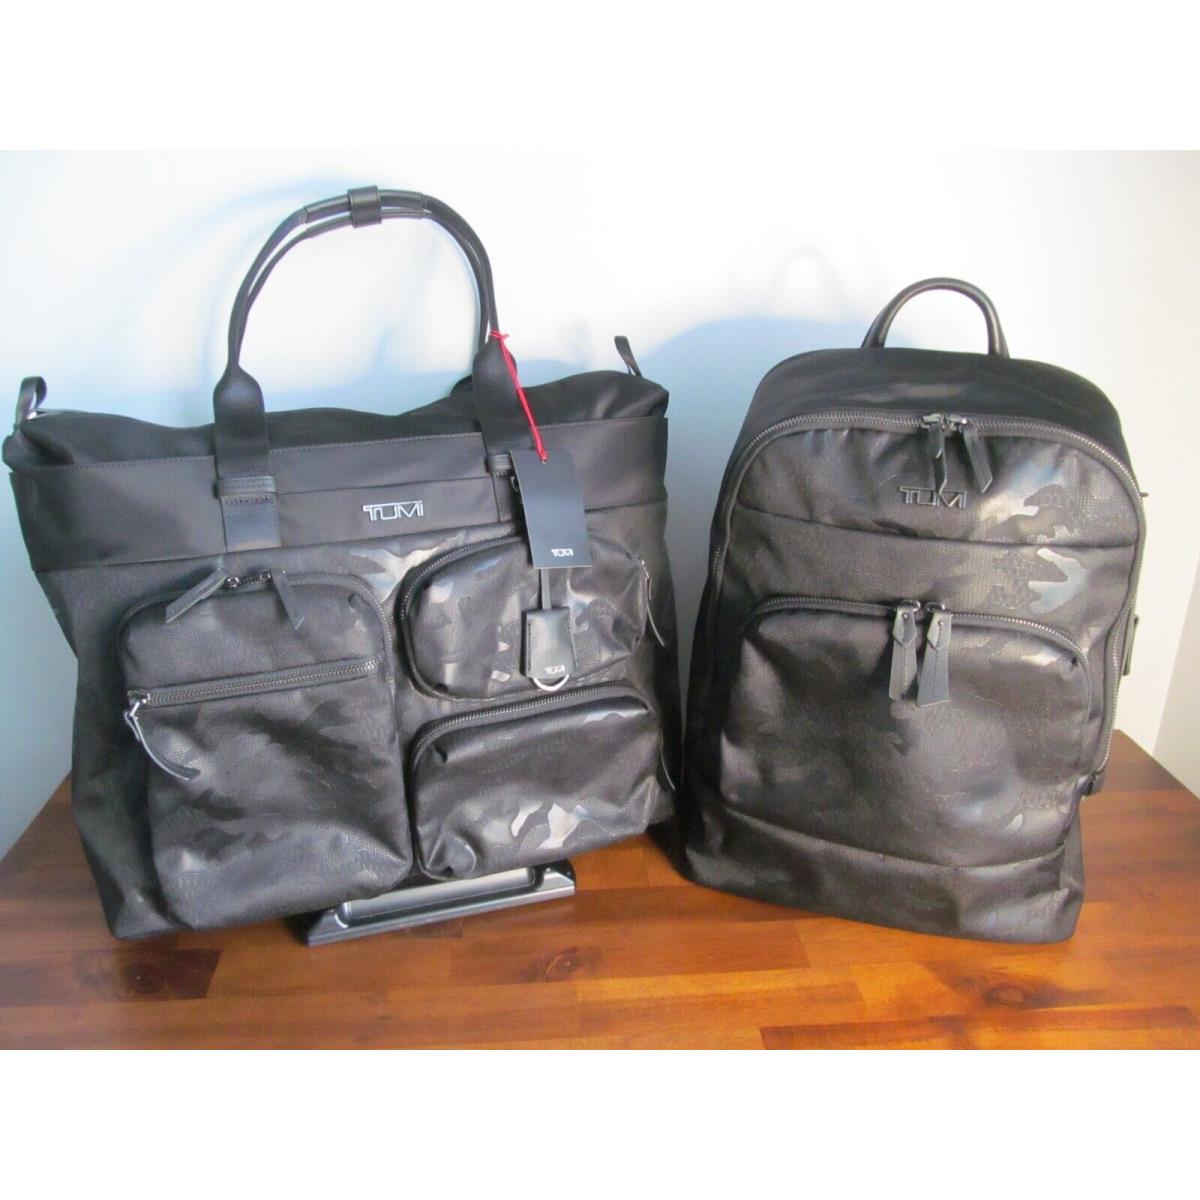 Tumi International Black on Black Camo Valise Matching 15 Laptop Backpack-nwt